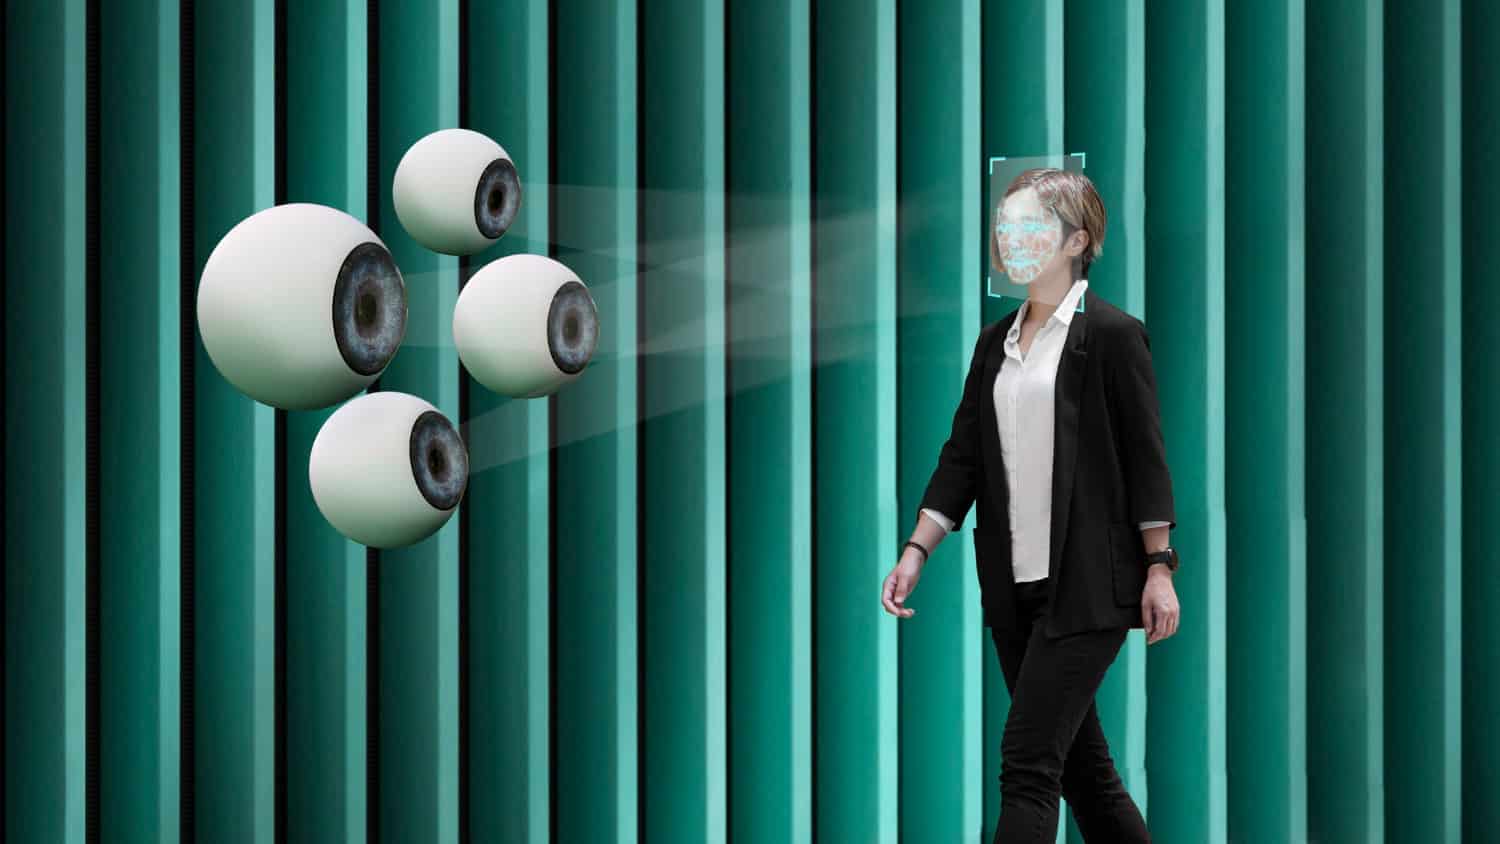 Câmera de vigilância: como ela pode garantir a segurança do seu